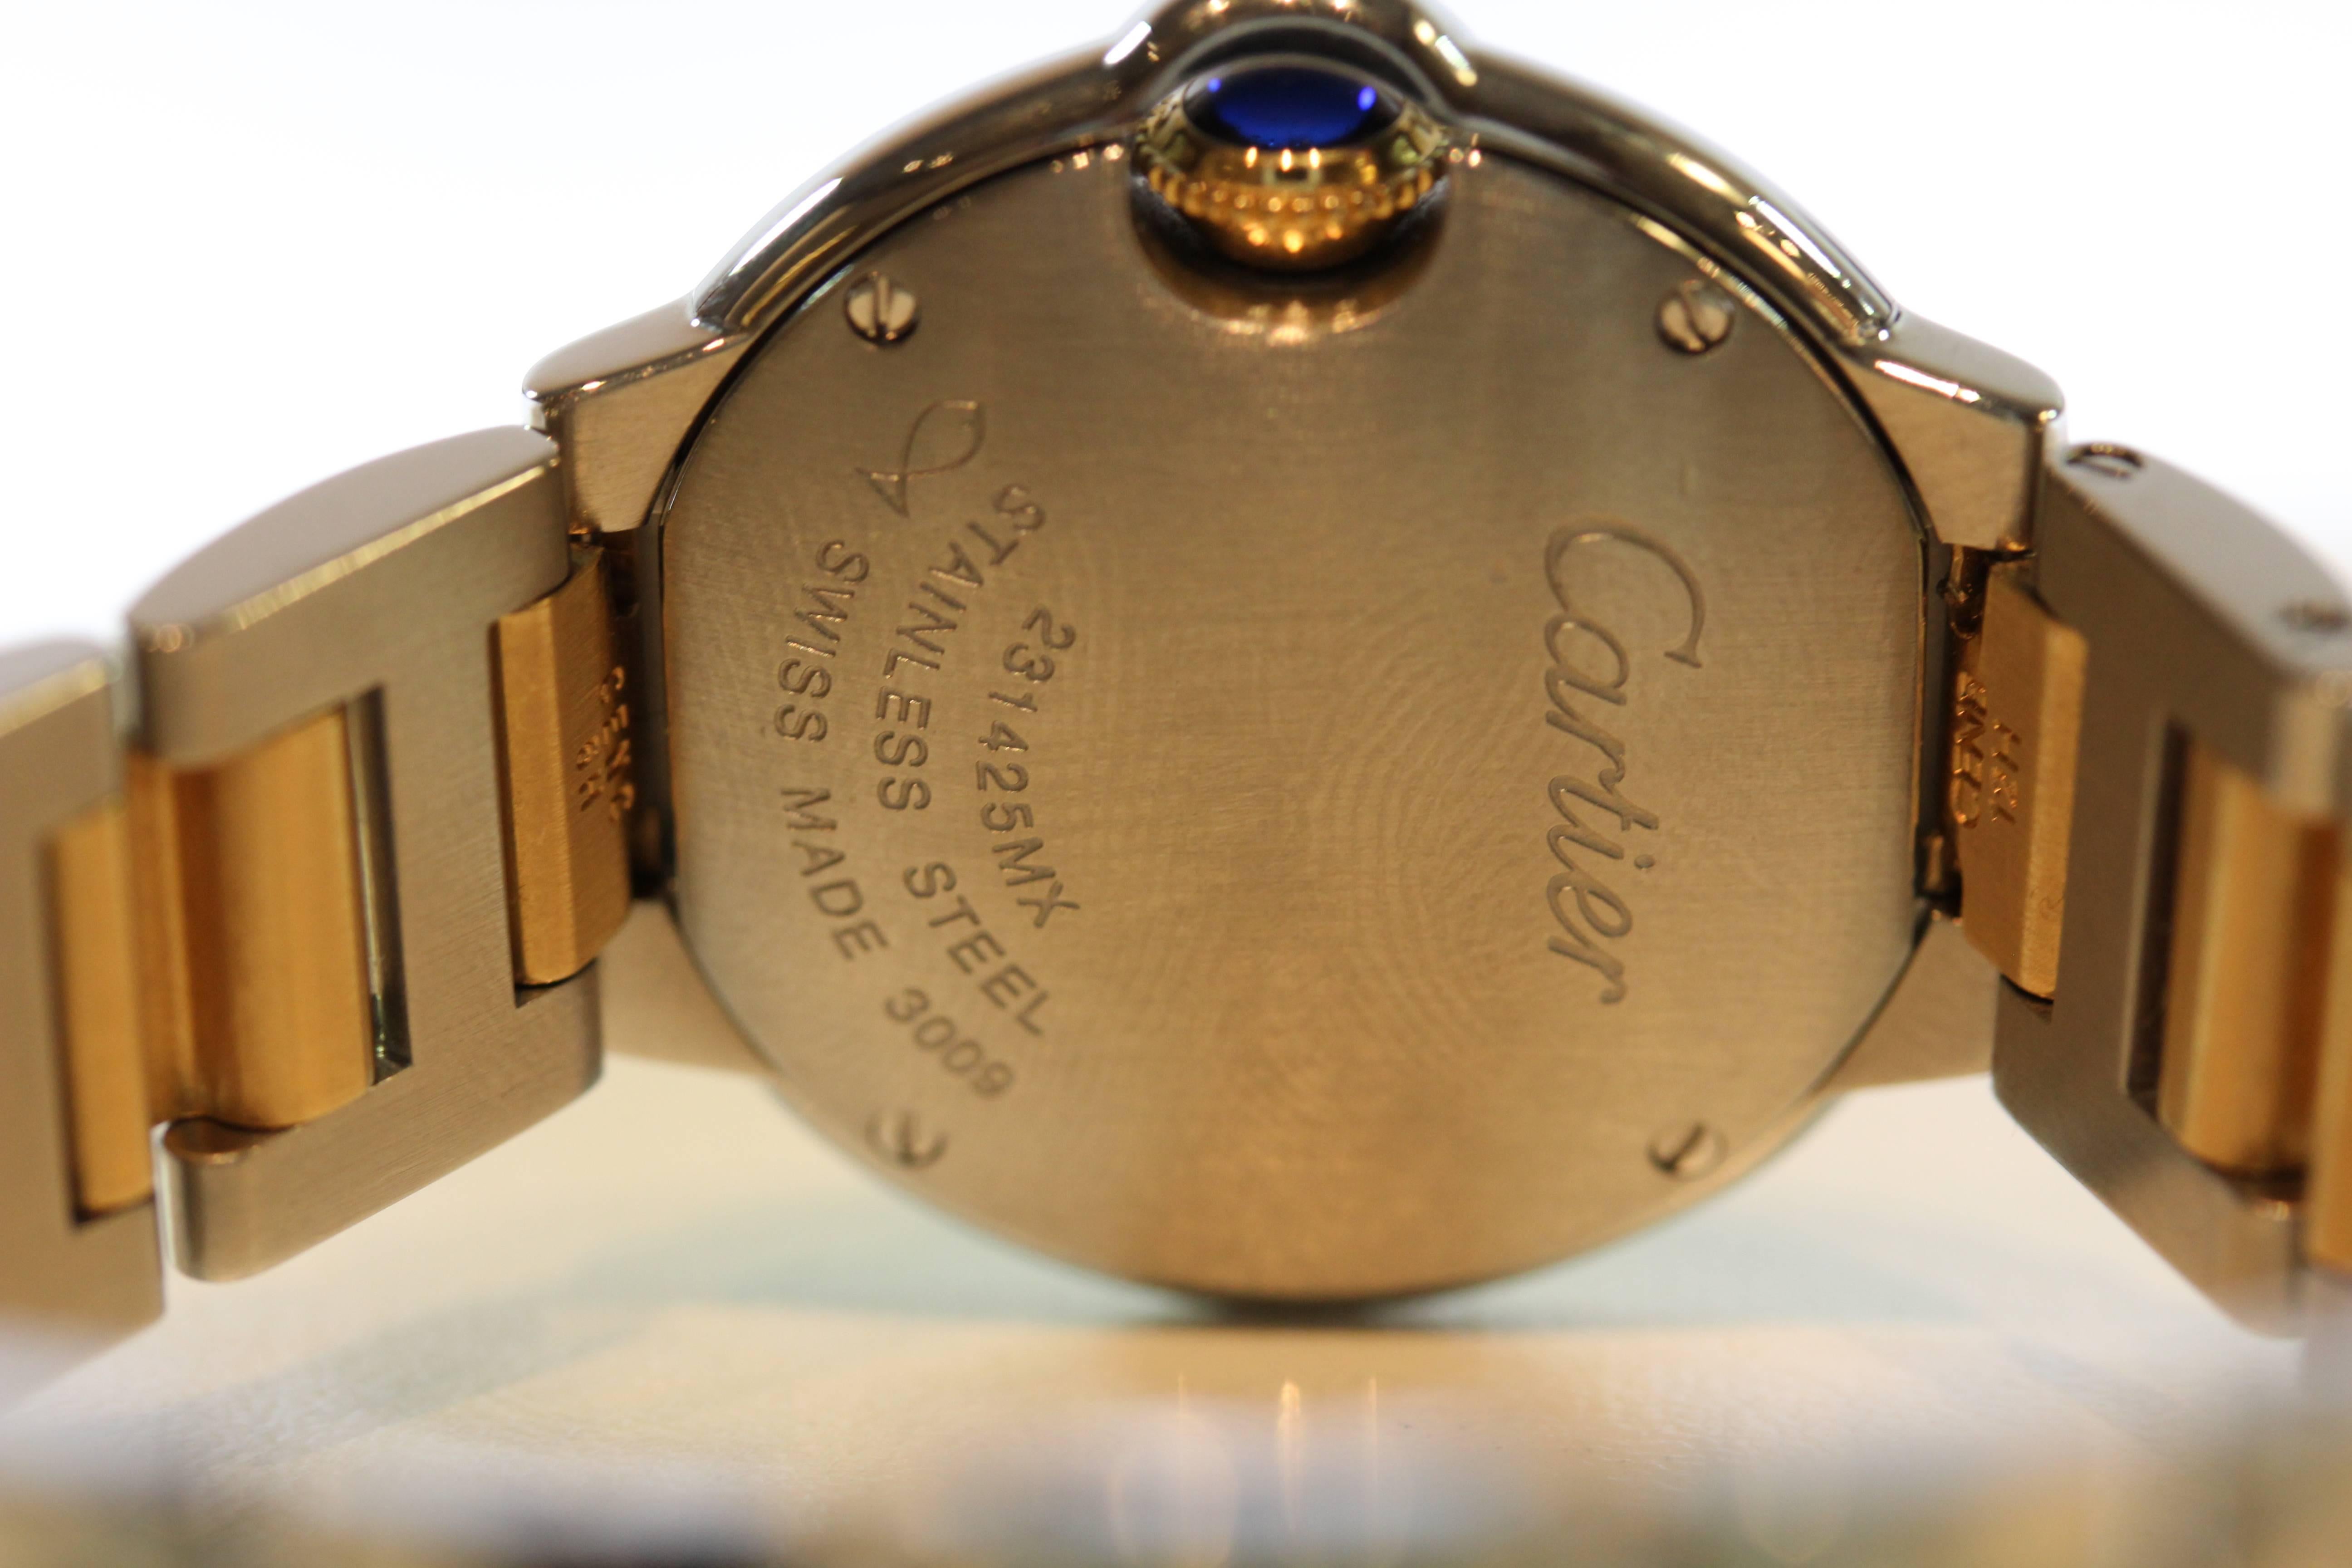 Contemporary Cartier Ballon Bleu Stainless Steel 18 Karat Yellow Gold Wristwatch